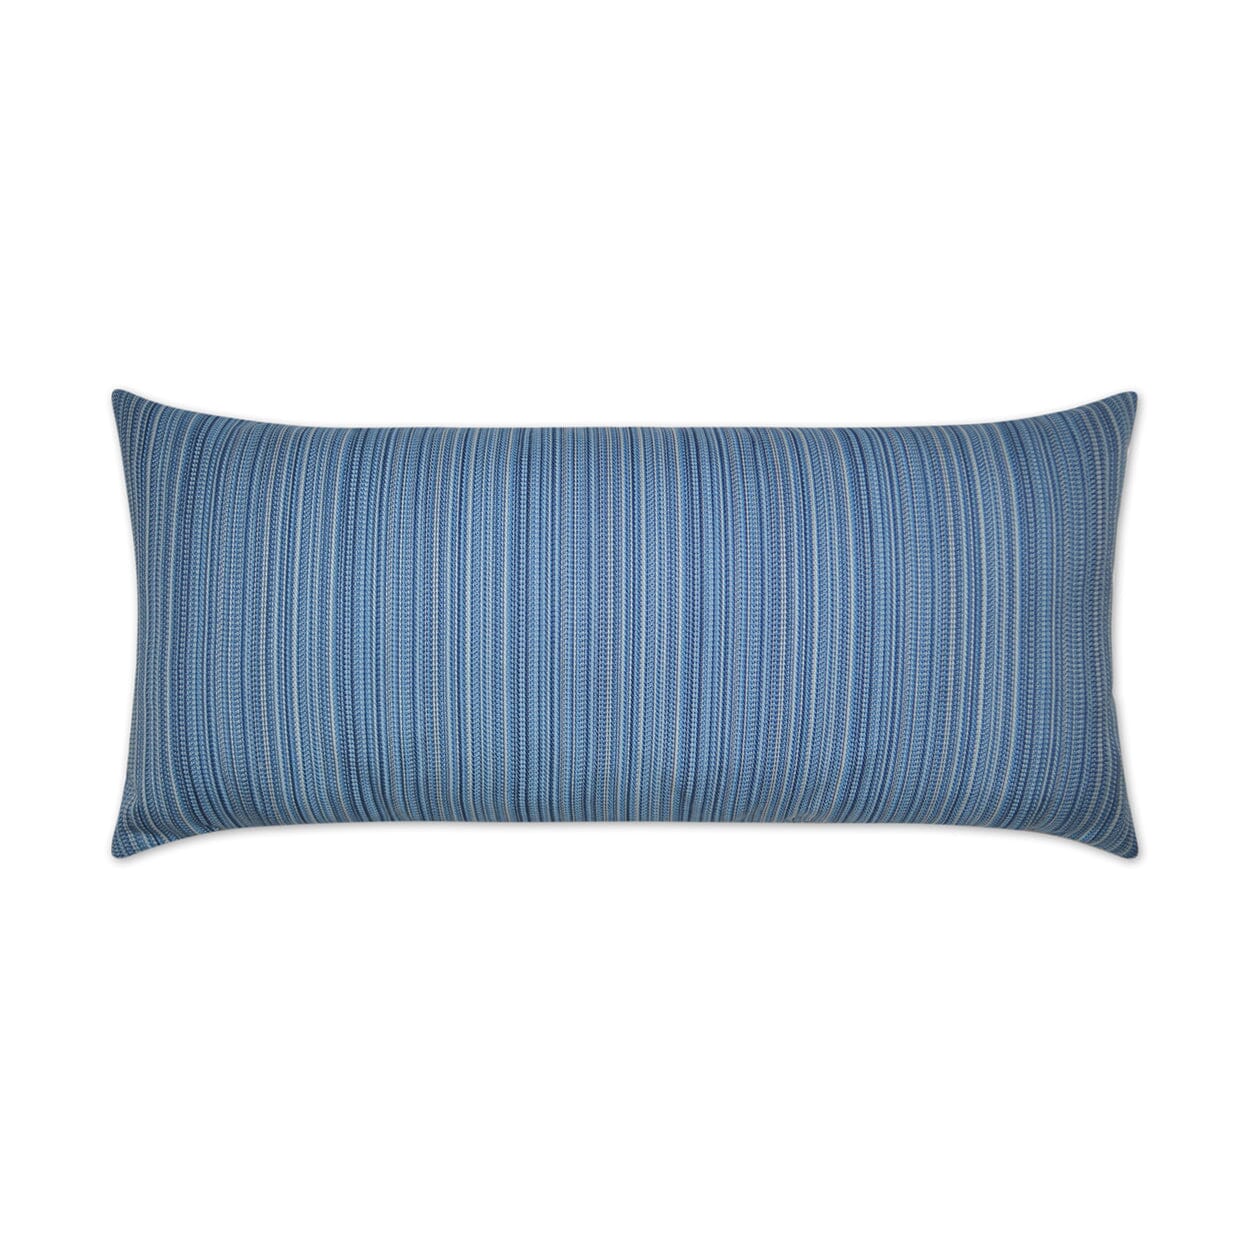 D.V. Kap 12" x 24" Outdoor Lumbar Pillow | Jinga Blue Pillows D.V Kap Outdoor